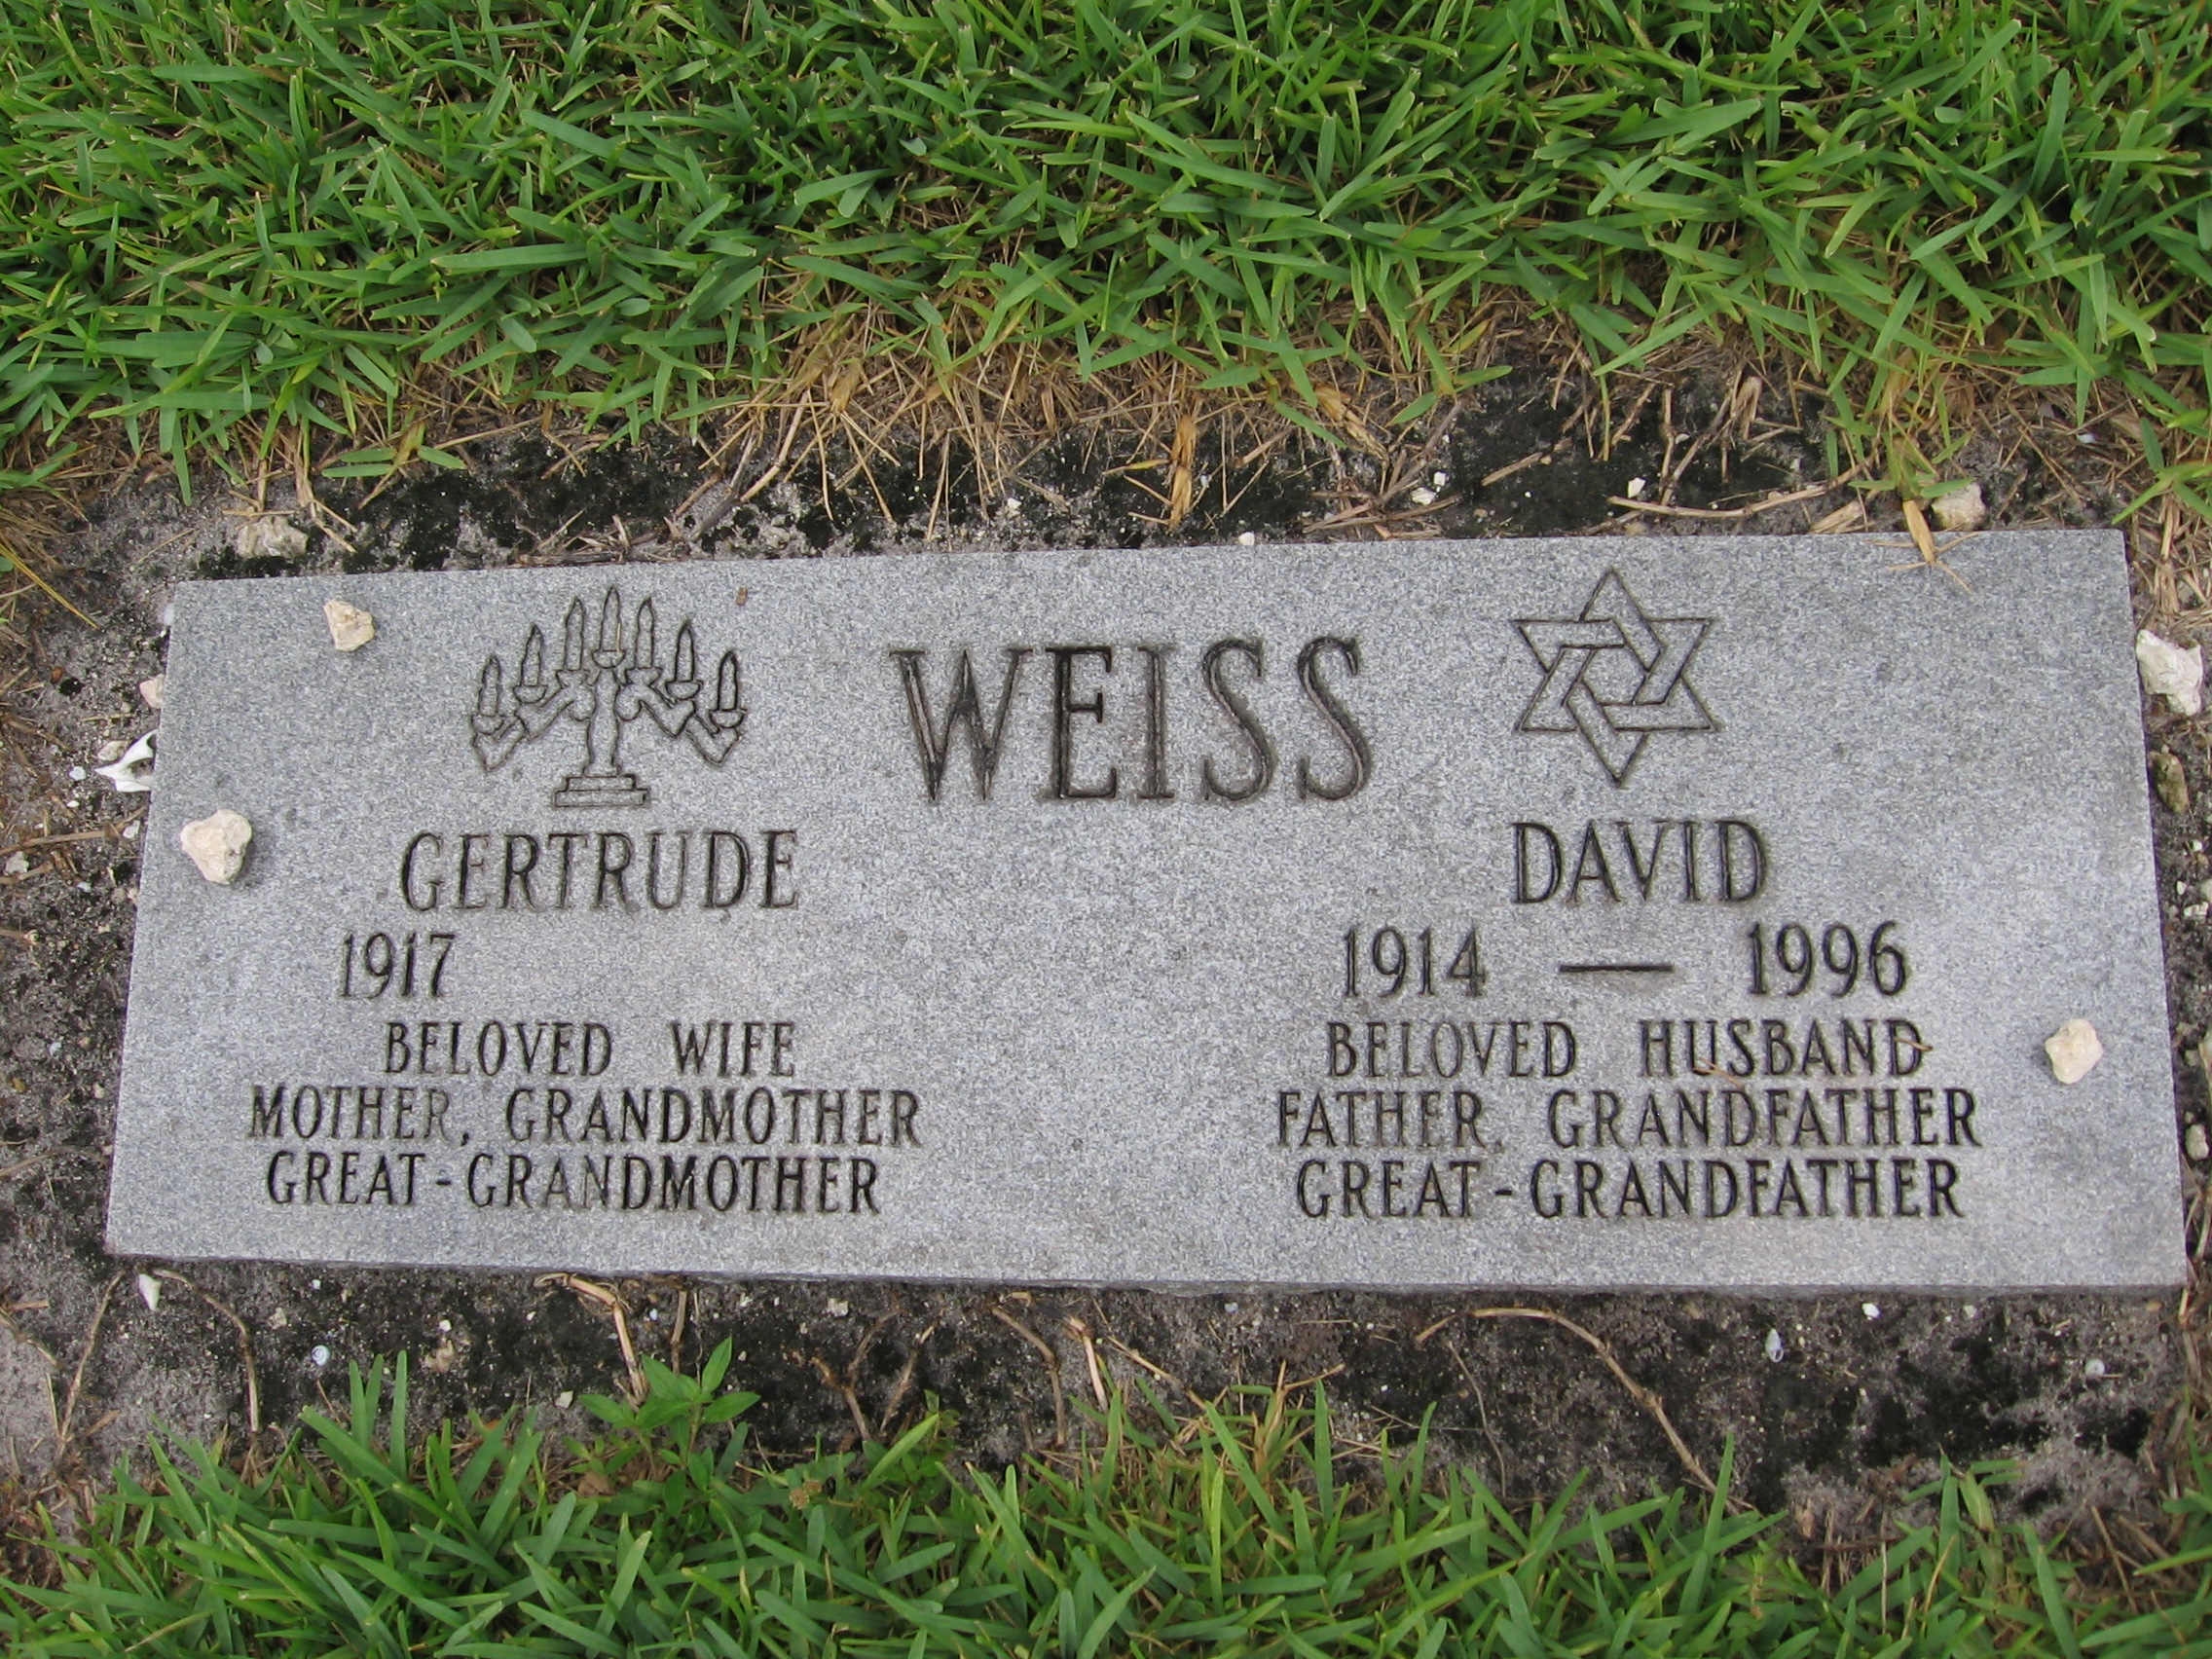 David Weiss